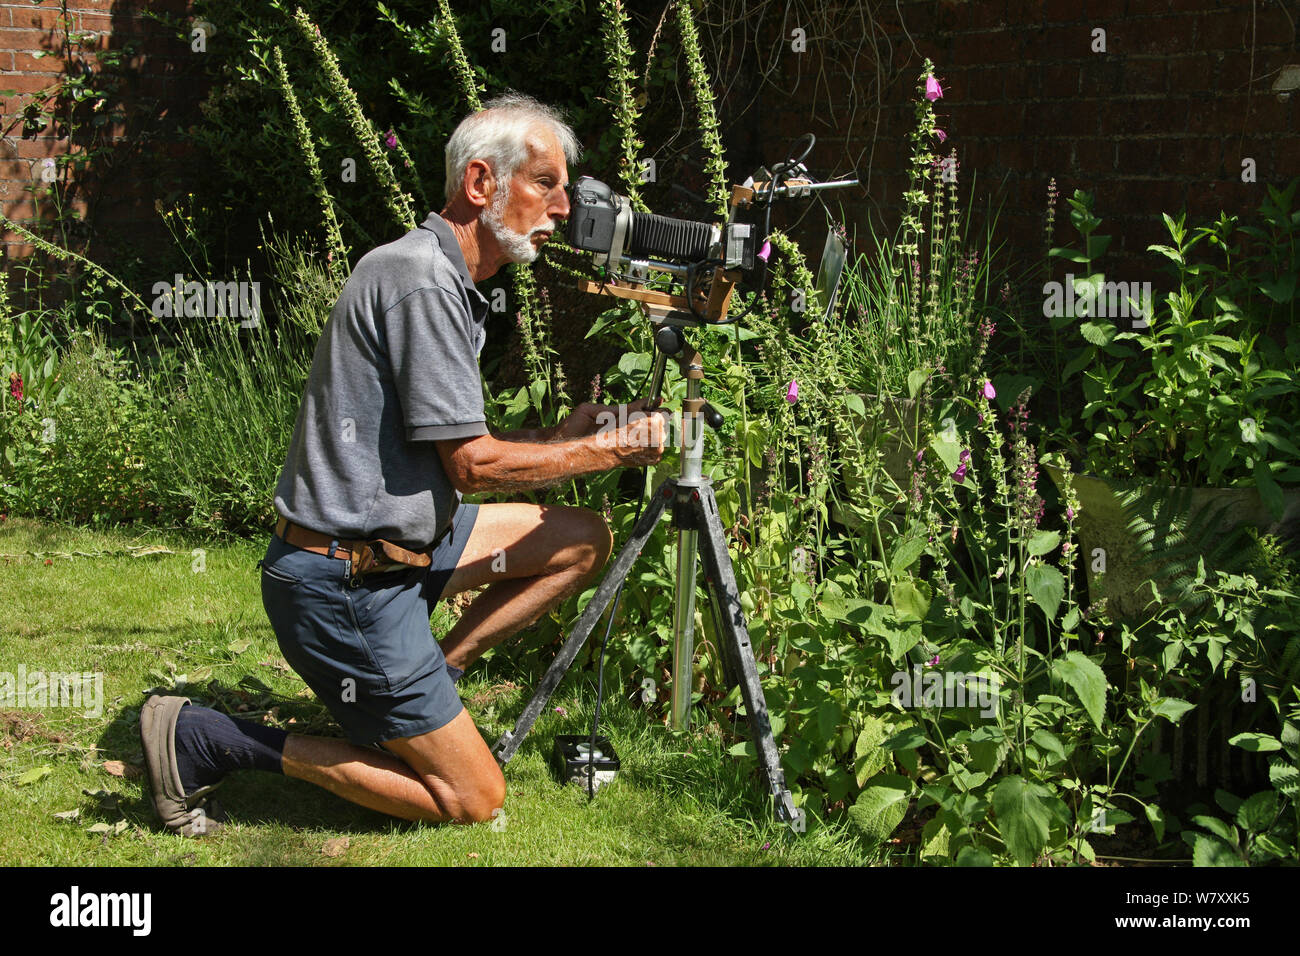 Fotograf Kim Taylor mit selbstgemachten Kamera und Blitz Ausrüstung für Nahaufnahmen in Garten, Juli 2013. Stockfoto